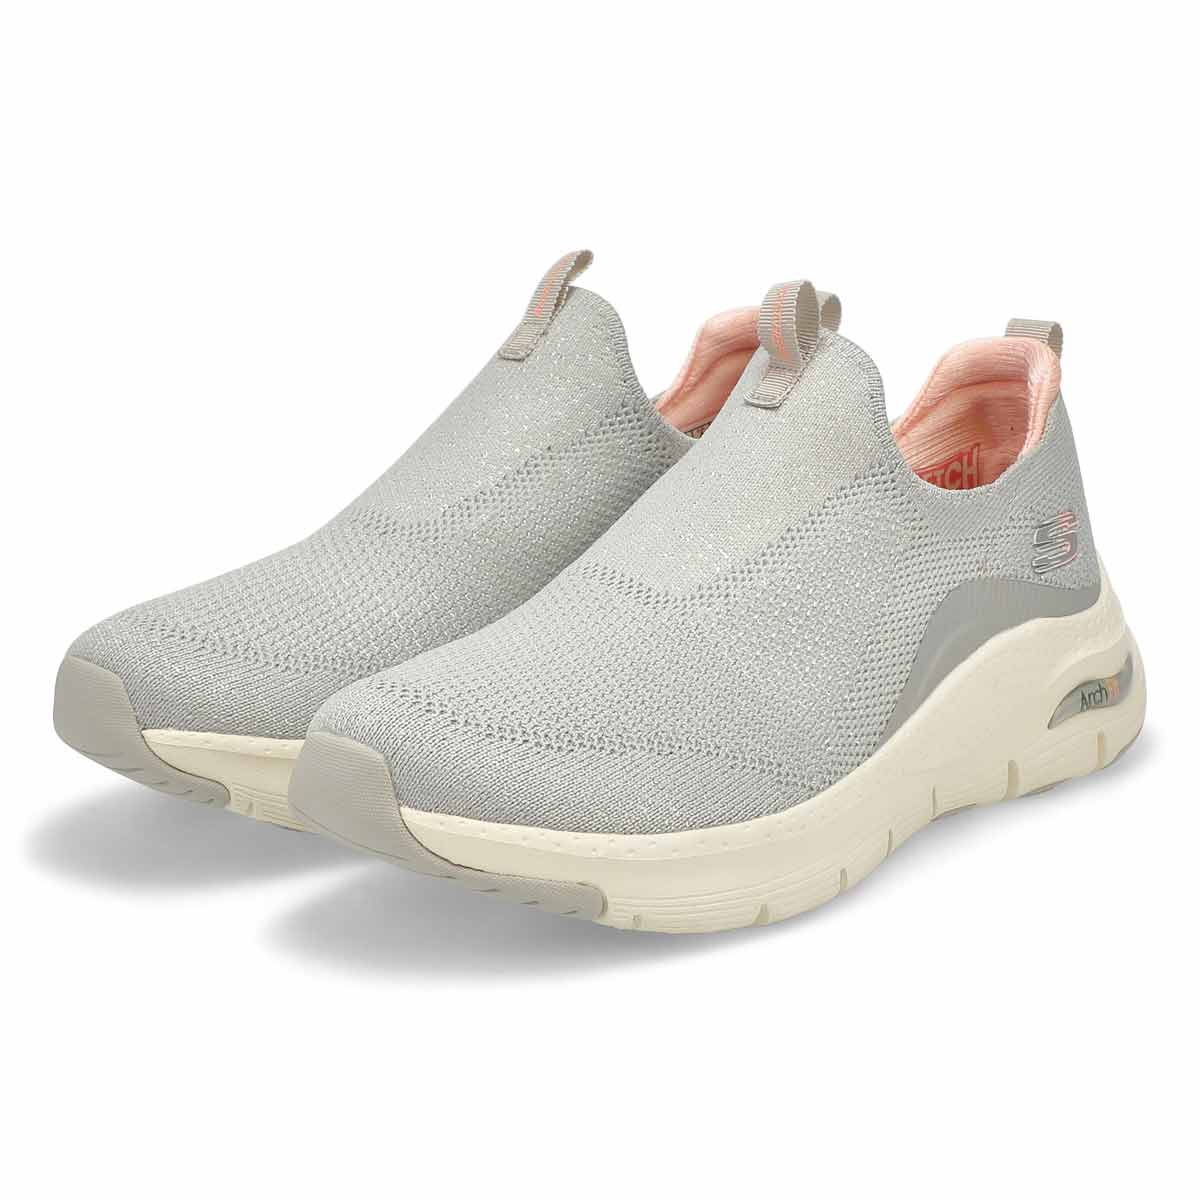 Women's Arch Fit Sneaker - Light Grey/Pink